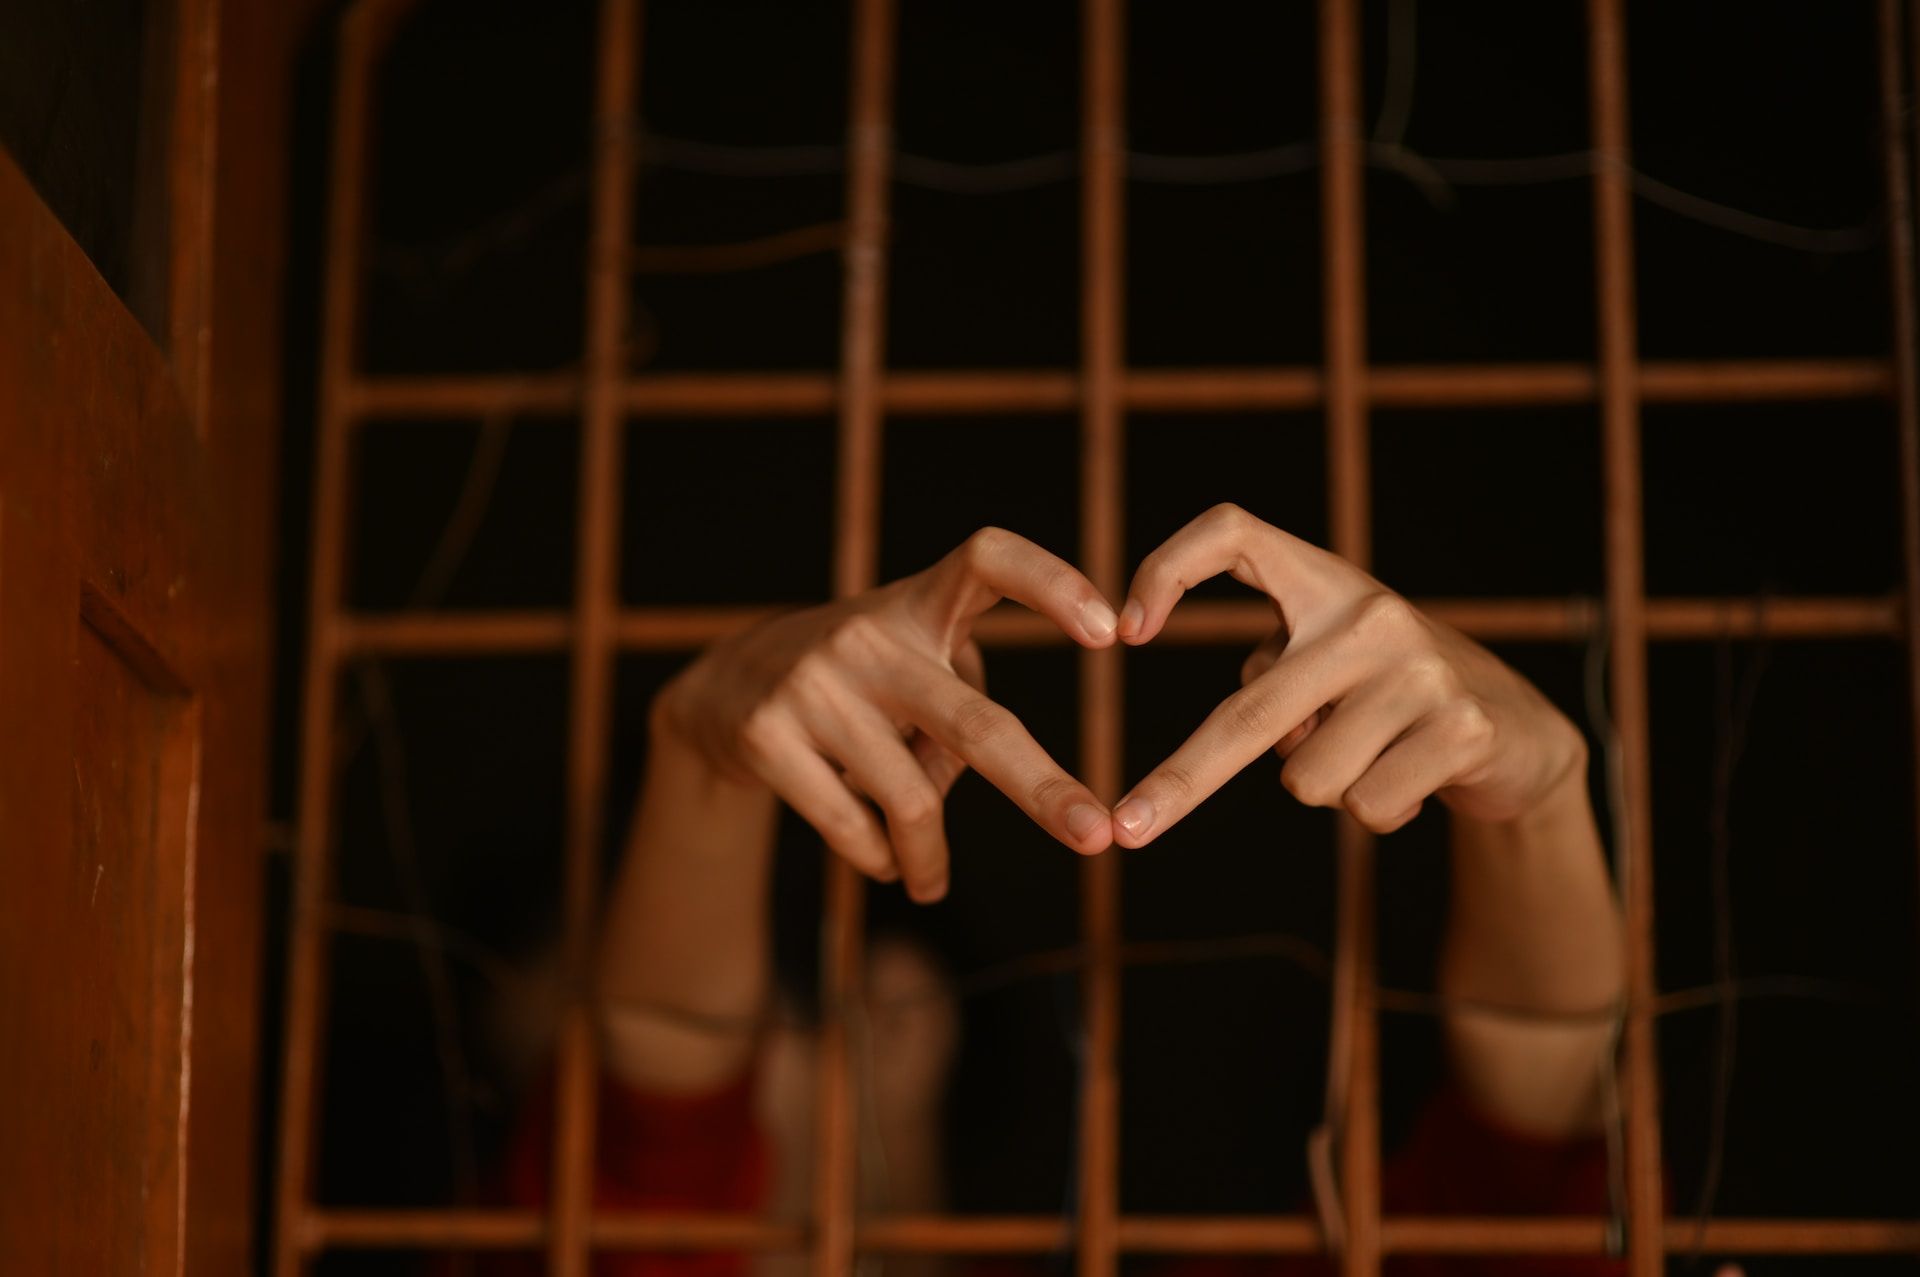 un prisonnier fait un cœur avec ses doigts derrière les barreaux - Photo de Rajesh Rajput sur https://unsplash.com/fr/photos/Sw8LdXgIsUY